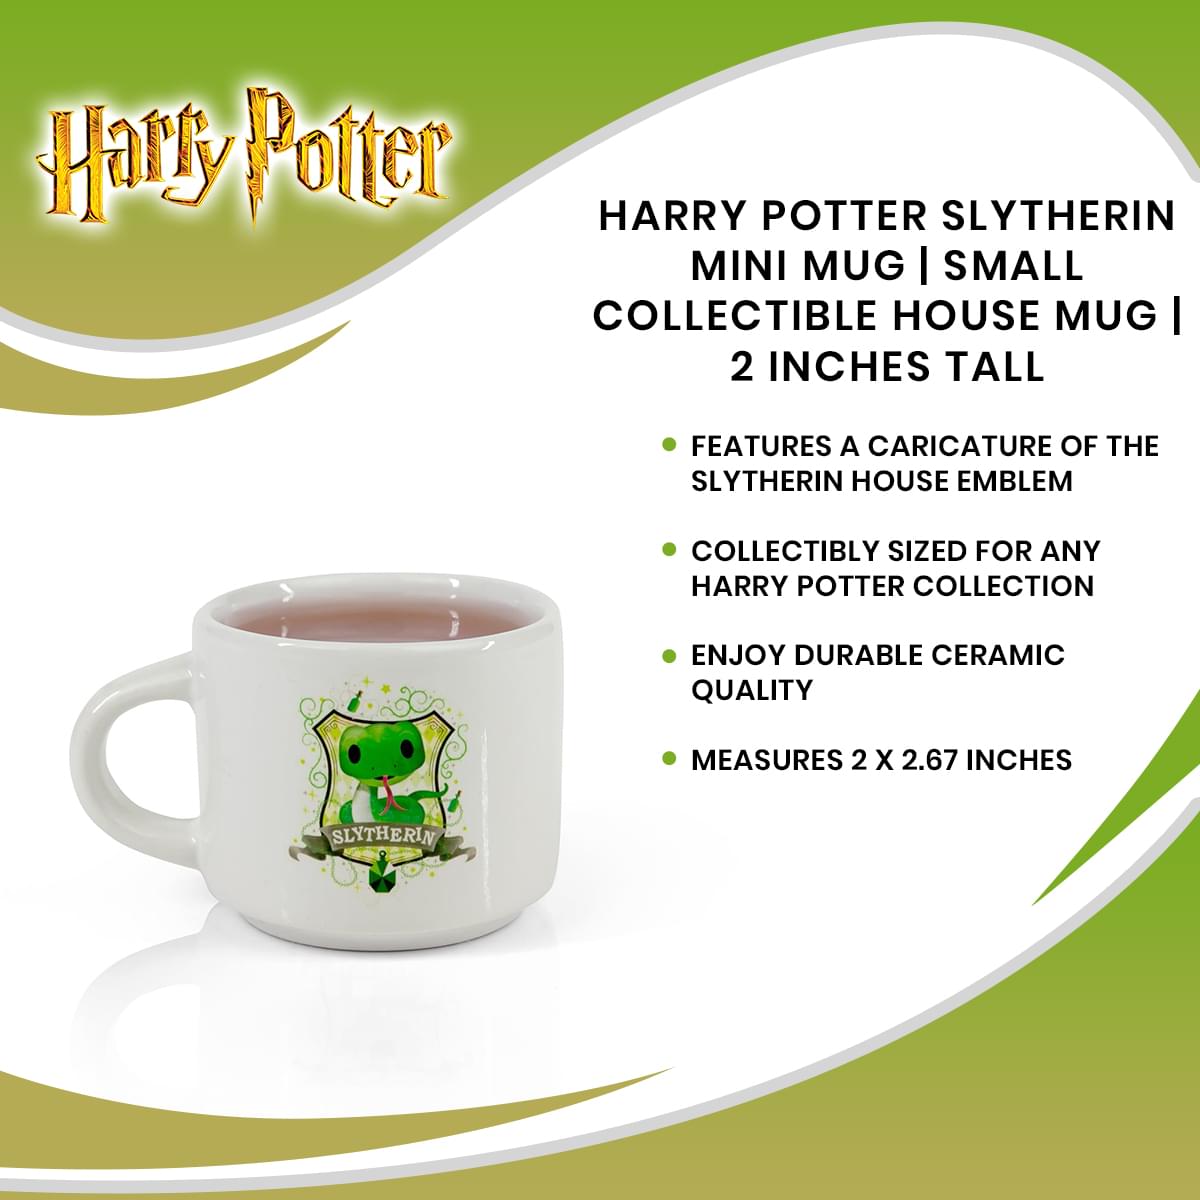 Harry Potter Slytherin Mini Mug | Small Collectible House Mug | 2 Inches Tall